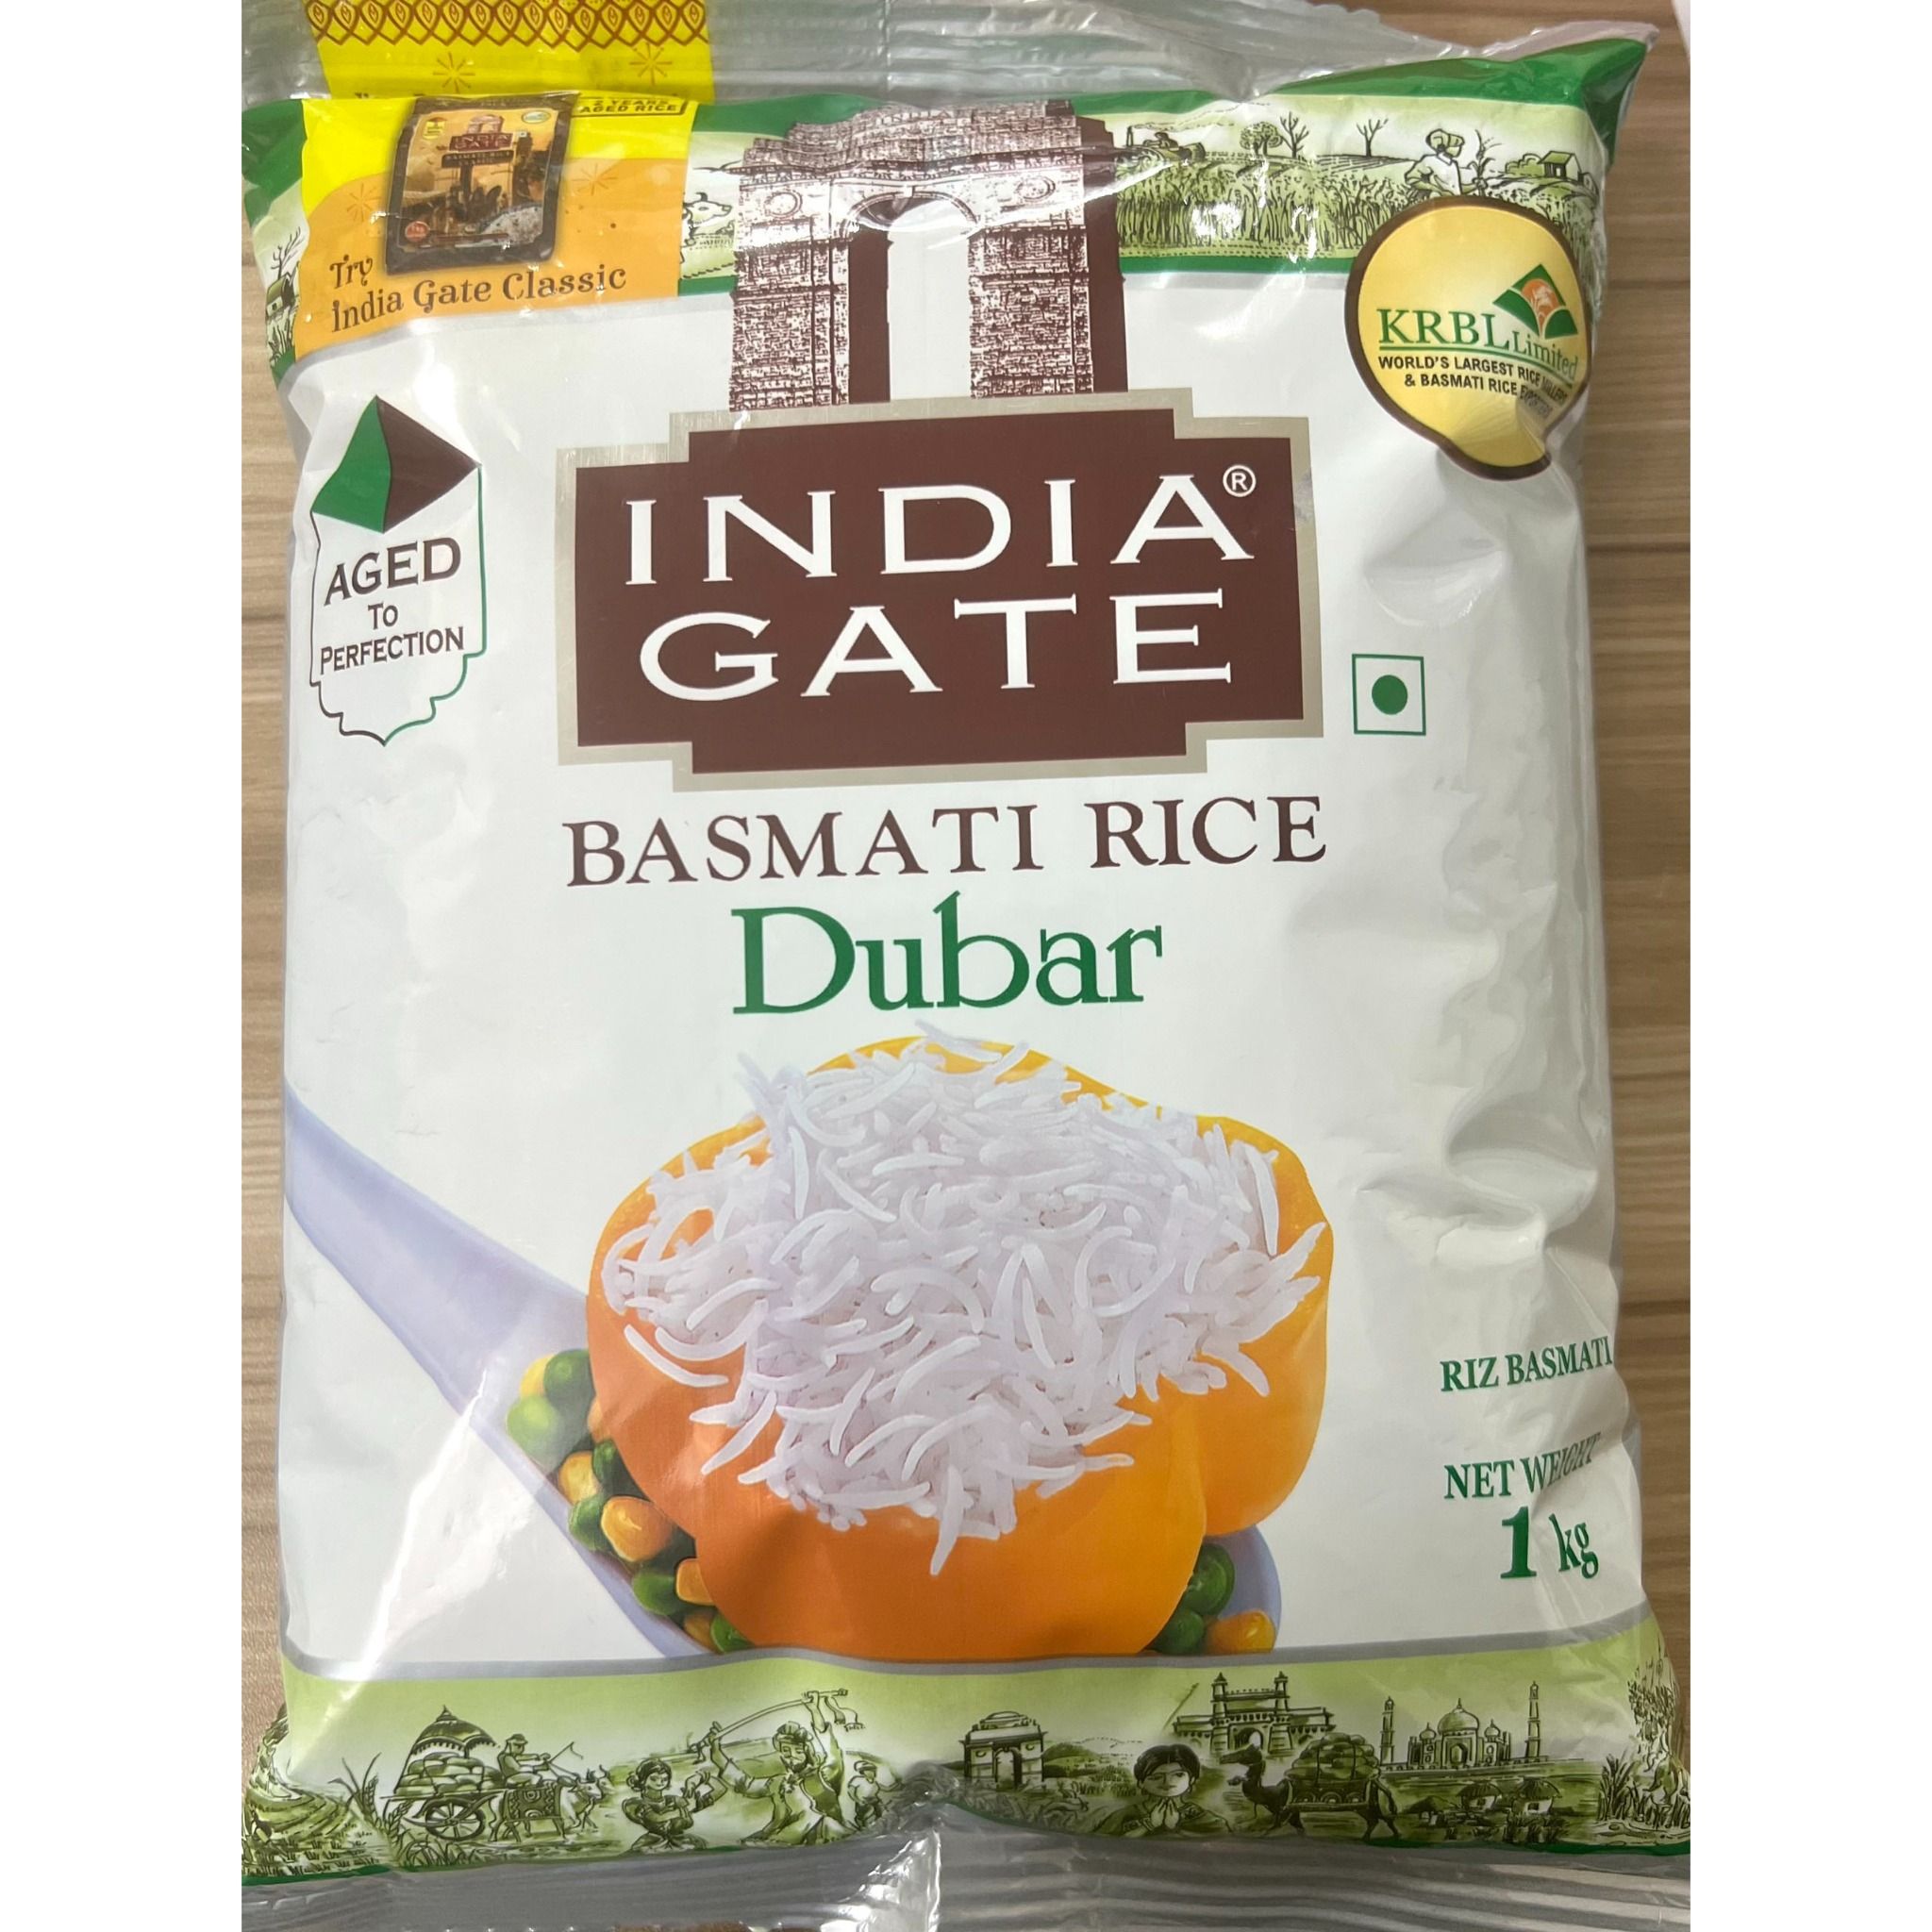 gao hat dai an do india gate dubar basmati rice phu hop nguoi tieu duong giam can 1kg